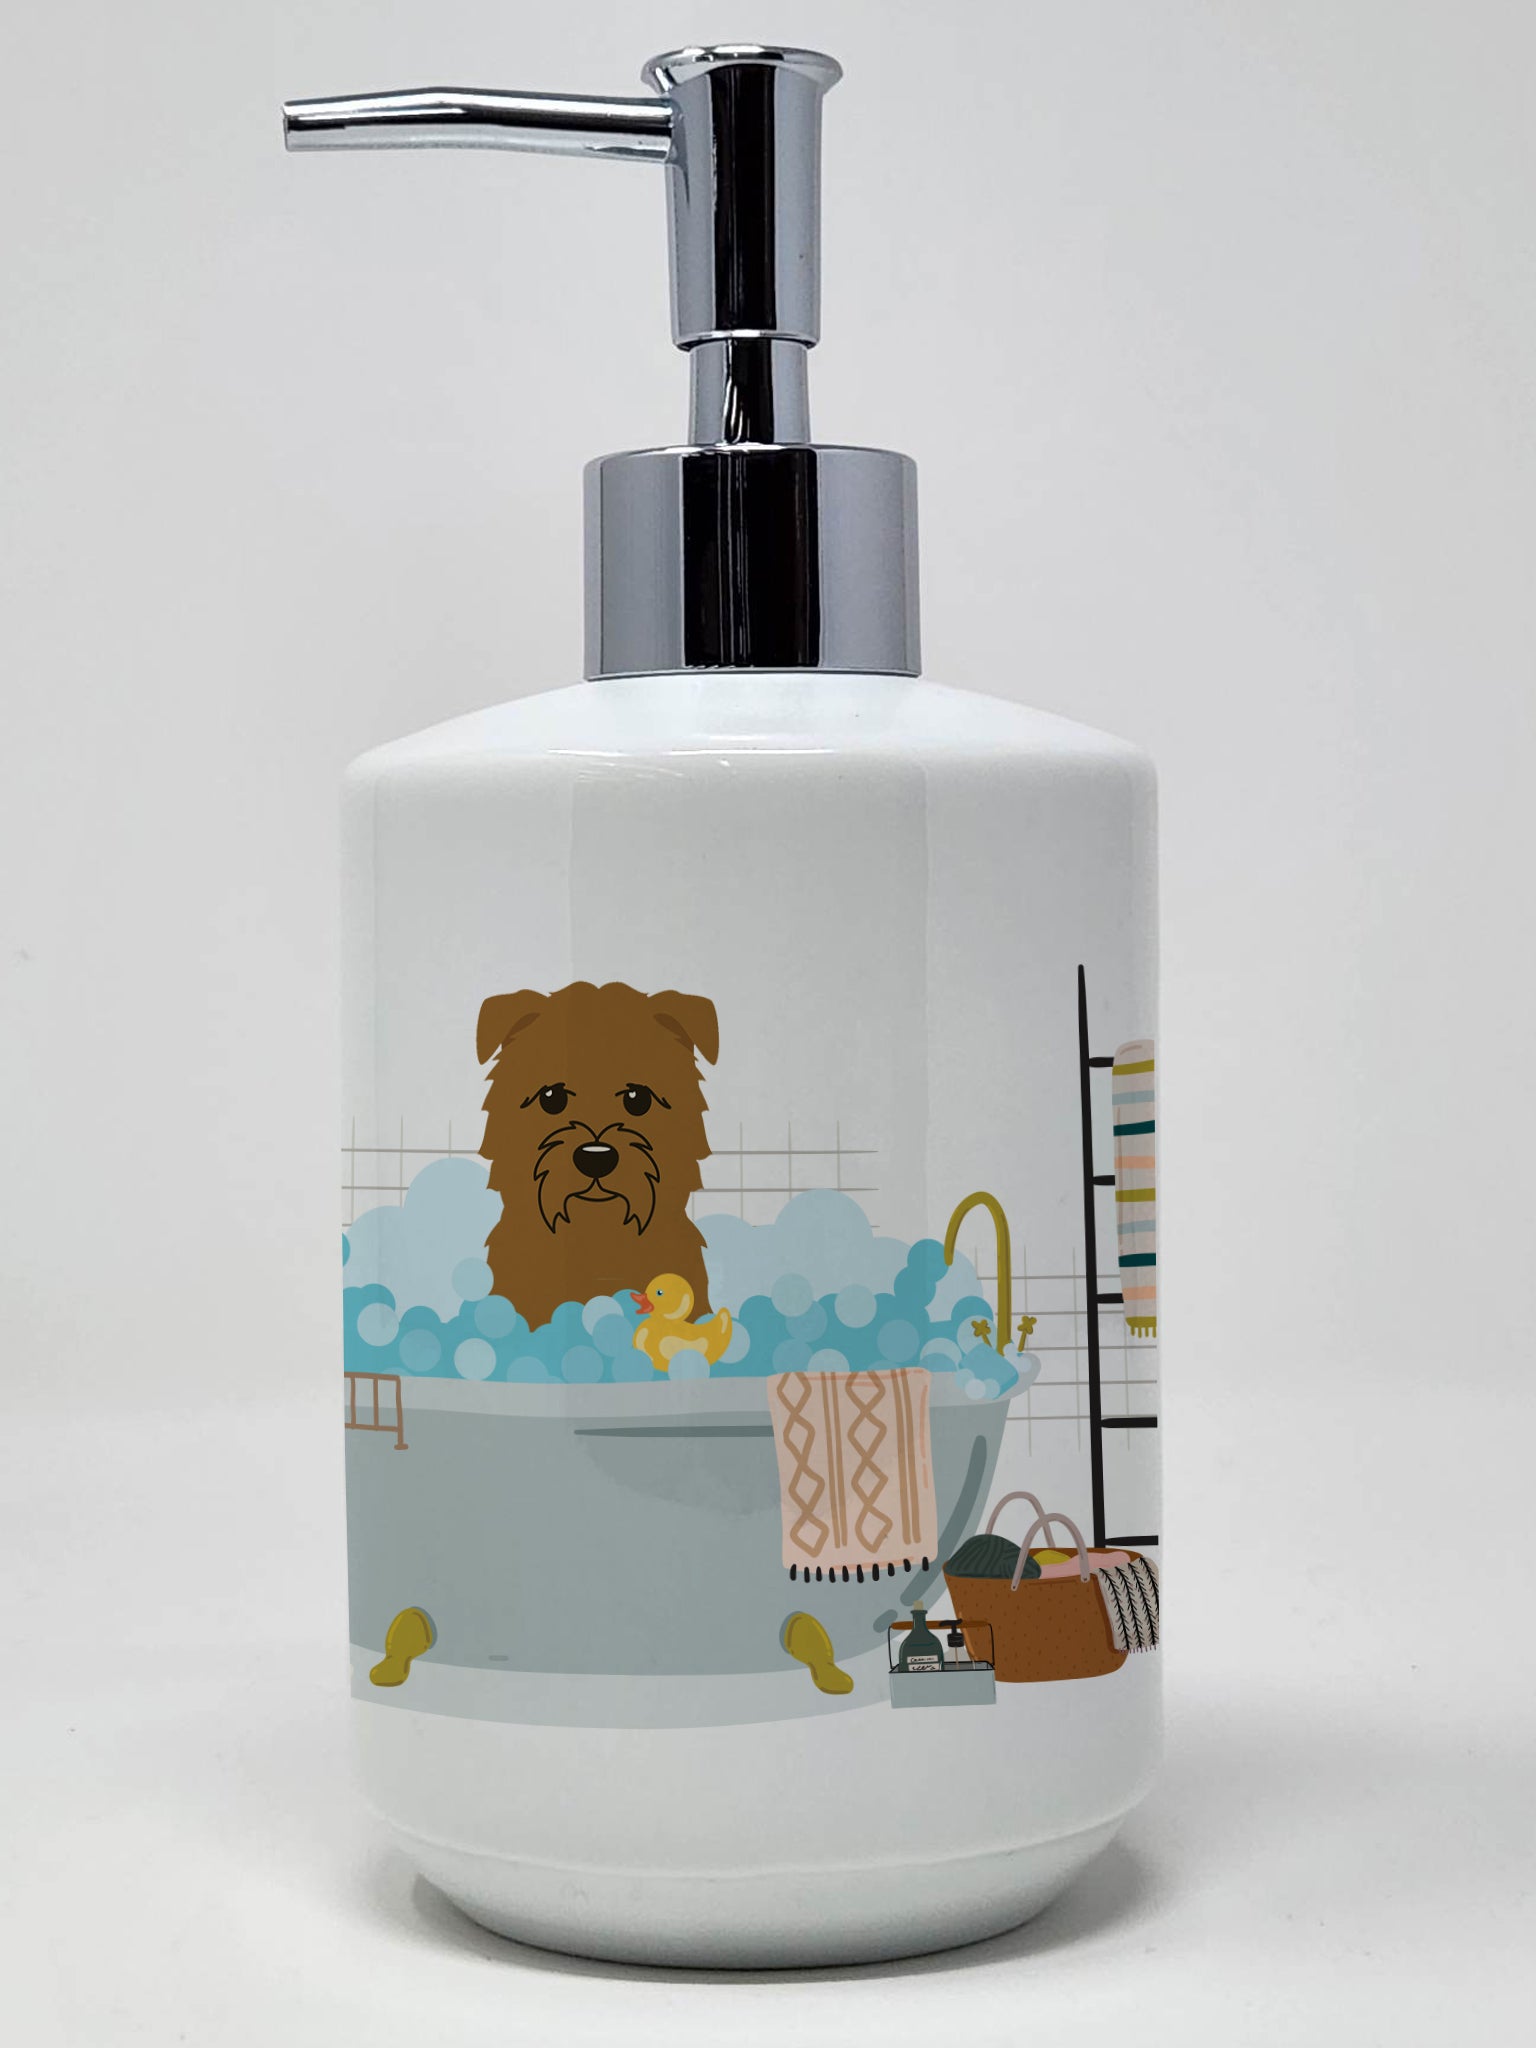 Buy this Tan Glen of Imal in Bathtub Ceramic Soap Dispenser